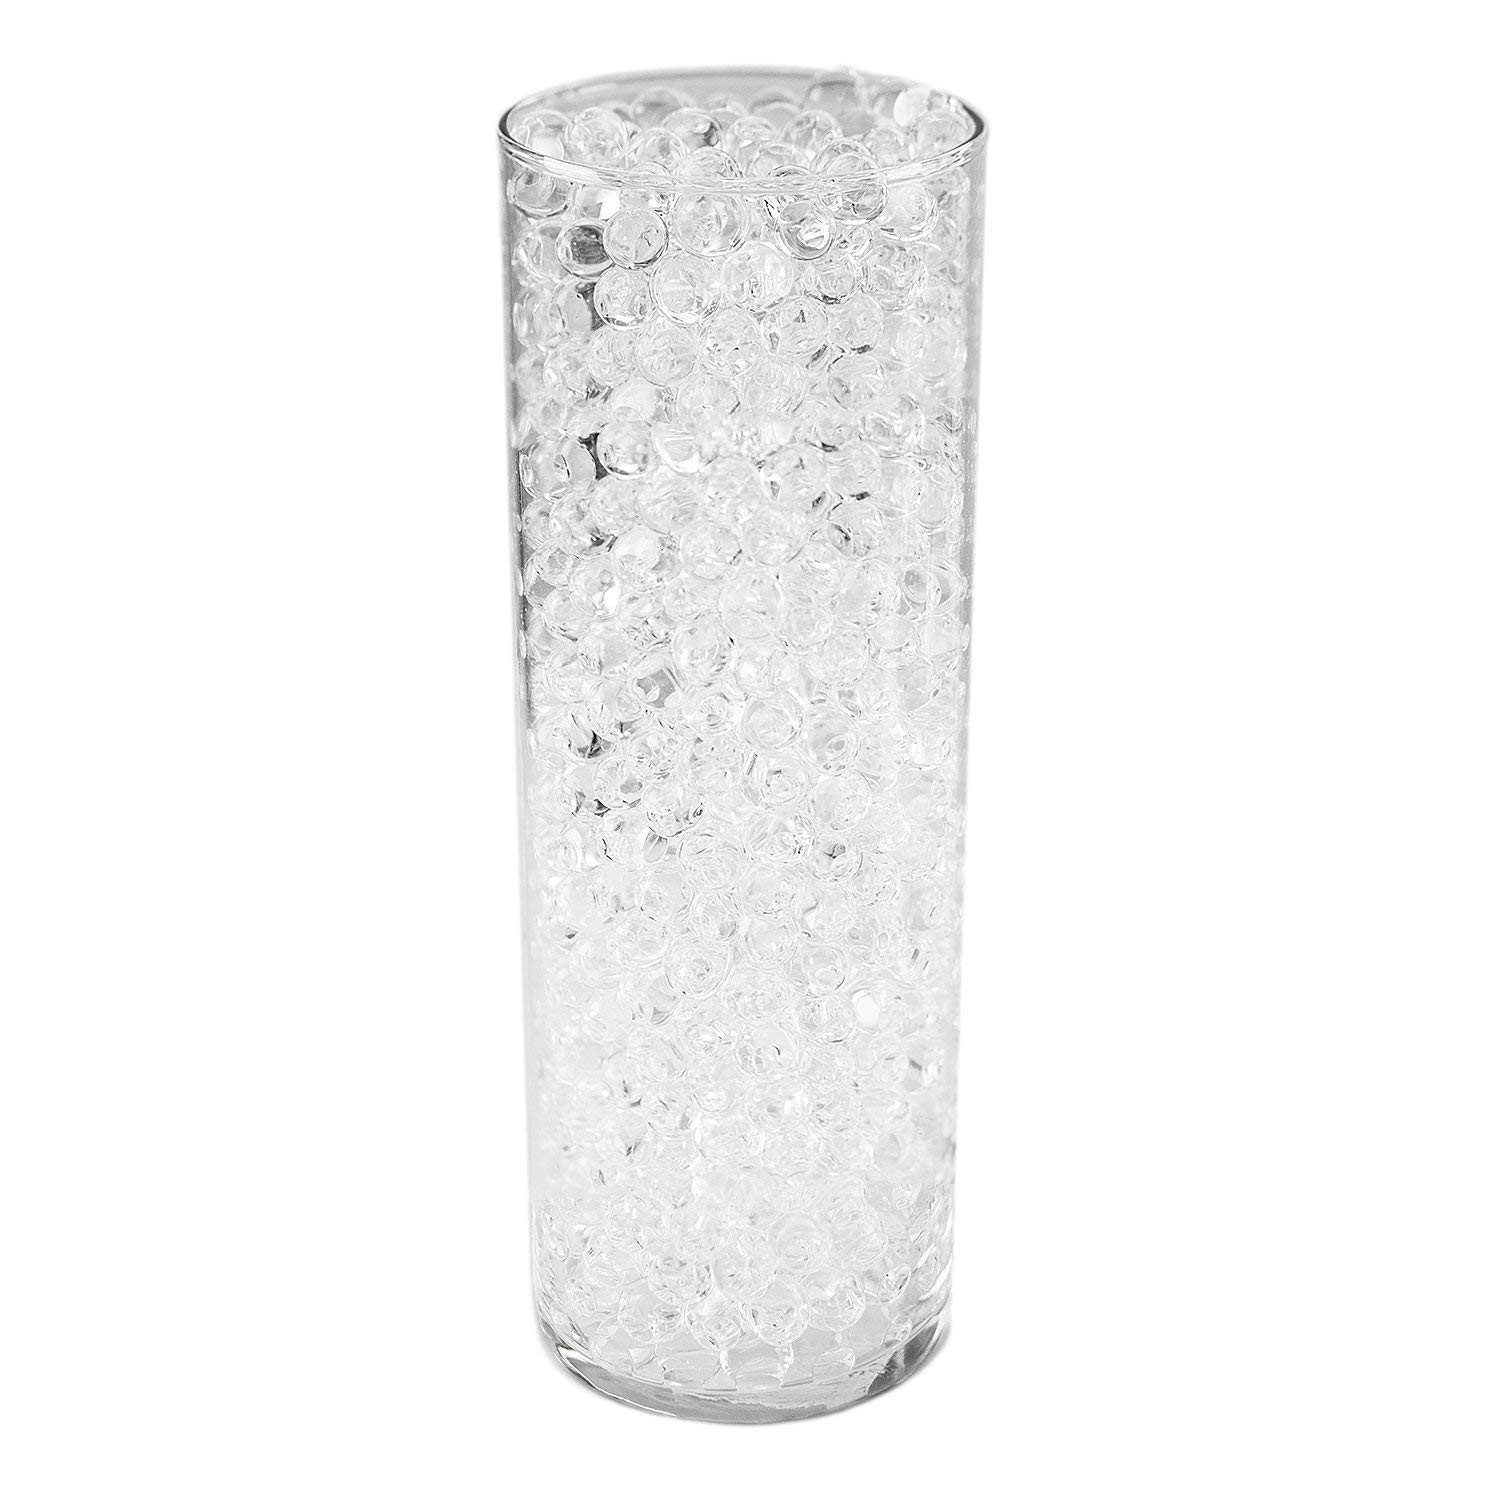 flower vase water beads of water pearls vase filler www topsimages com within pound bag of clear water gel beads pearls for vase jpg 1500x1500 water pearls vase filler